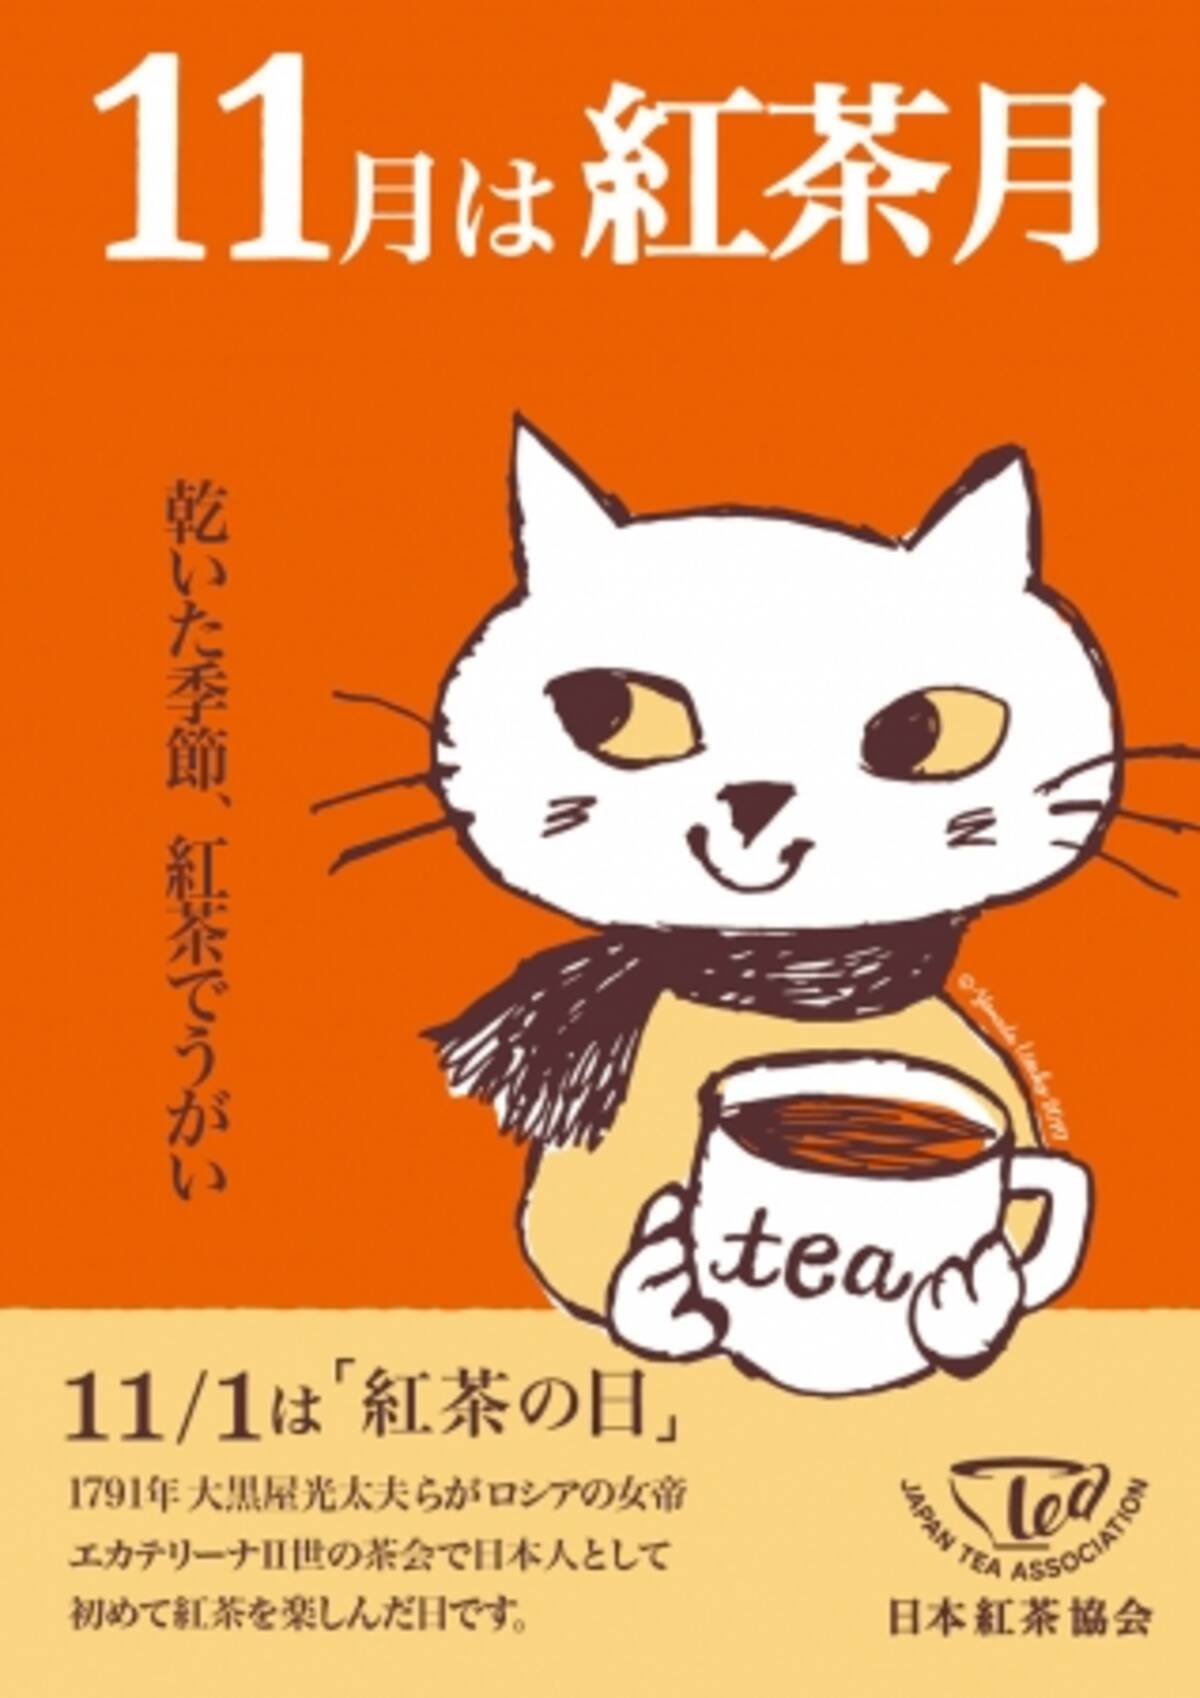 11月は 紅茶月 カレルチャペック紅茶店オーナー山田詩子がイメージイラストを描き下ろし 17年10月31日 エキサイトニュース